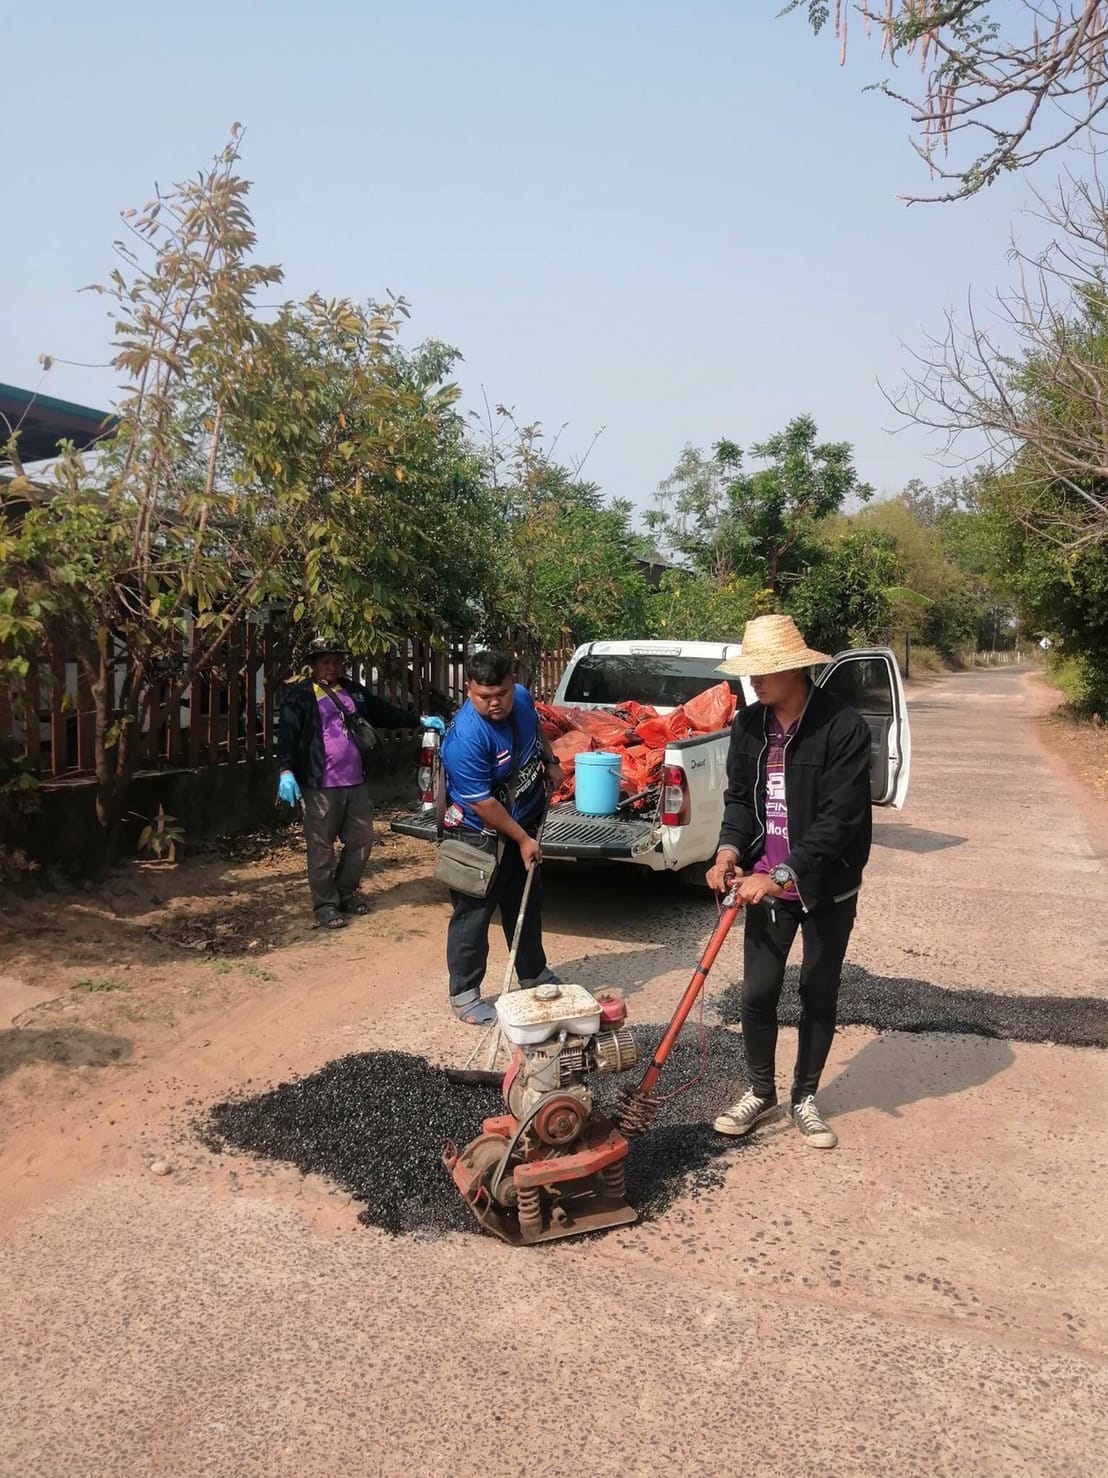 นที่ 27-28 กุมภาพันธ์ 2566 นายสหาย สังฆะมะณี นายกองค์การบริหารส่วนตำบลสะอาดสมบูรณ์ มอบหมายให้ กองช่าง ลงพื้นที่เข้าดำเนินการซ่อมแซมถนนภายในหมู่บ้านดอนทอง หมู่ที่ 1 บ้านดอนศรีวิไล หมู่ที่ 12 เพื่อความปลอดภัยของประชาชนผู้ใช้รถใช้ถนน